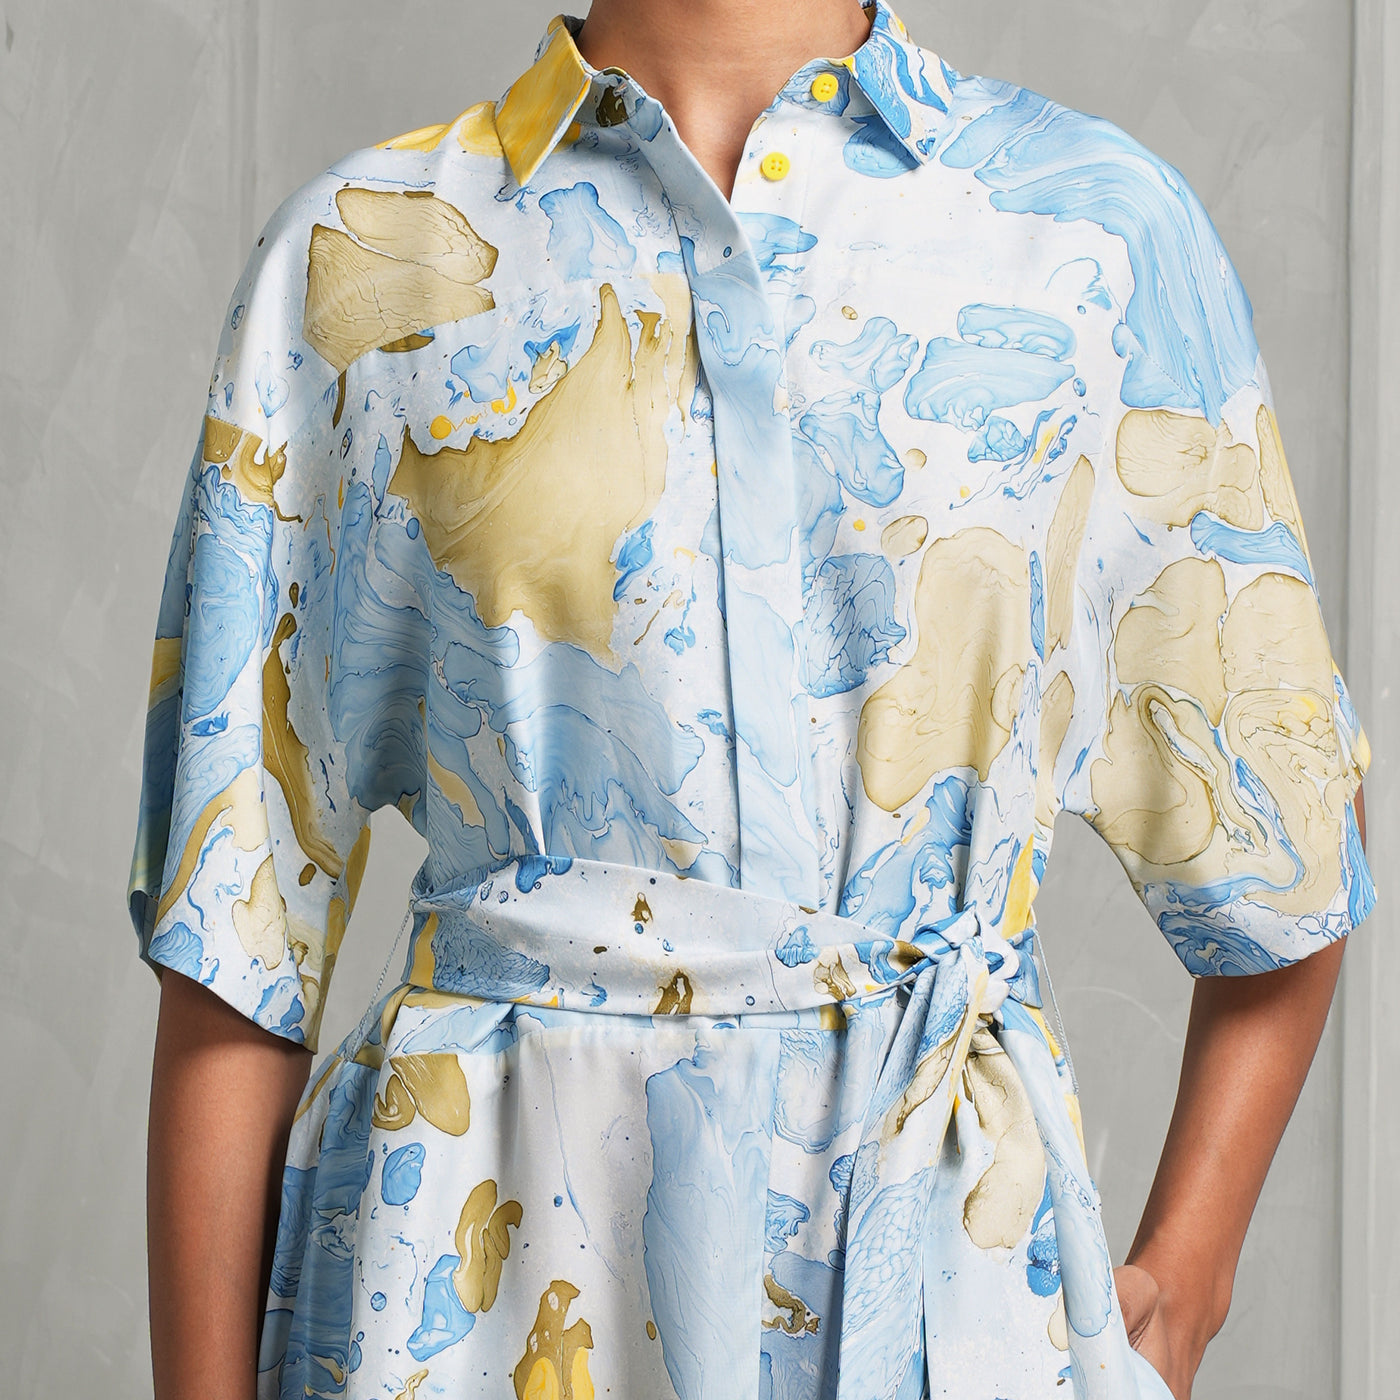 VARANA marble print shirt dress